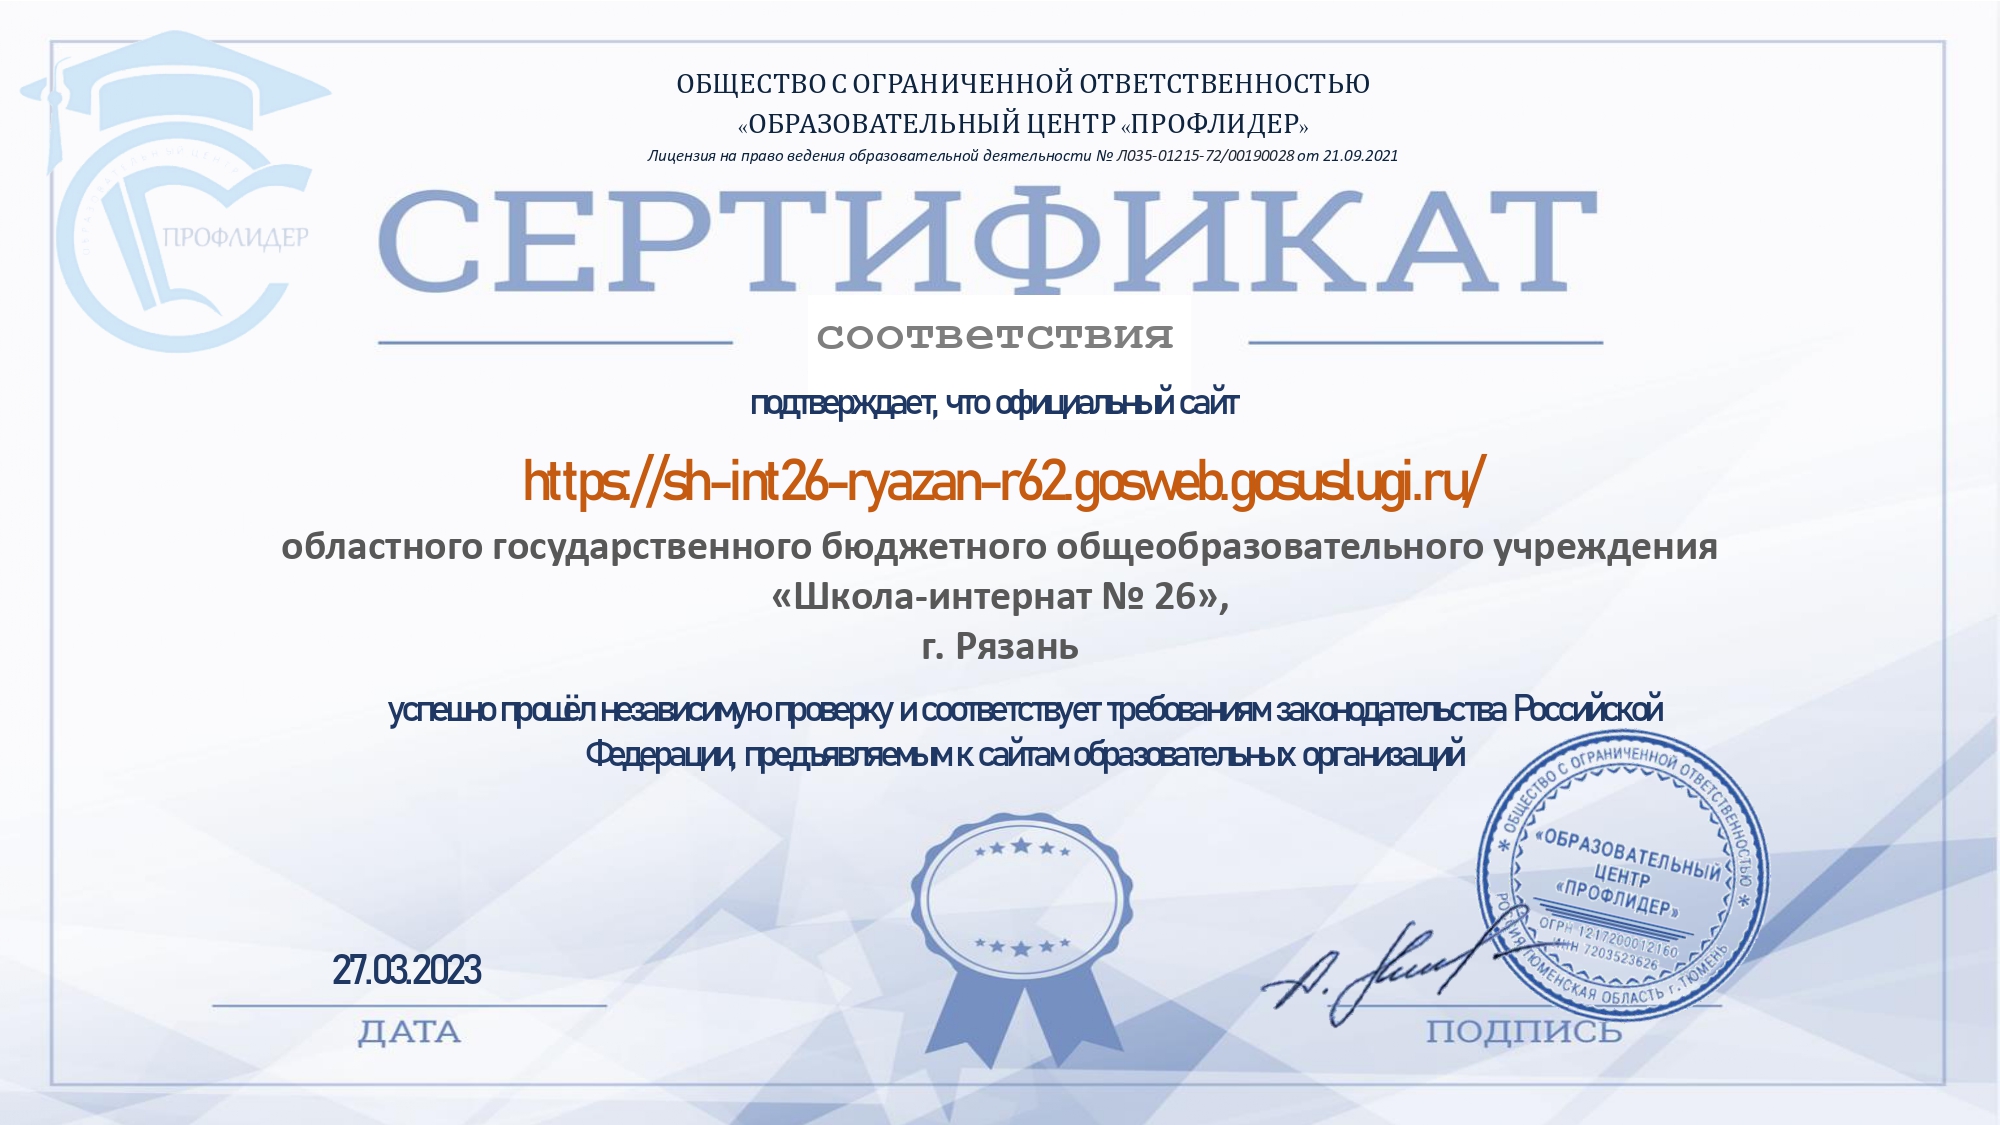 Экспертная оценка на соответствие требованиям Российского законодательства к структуре и содержанию официального сайта организации (от 27 марта 2023 года)